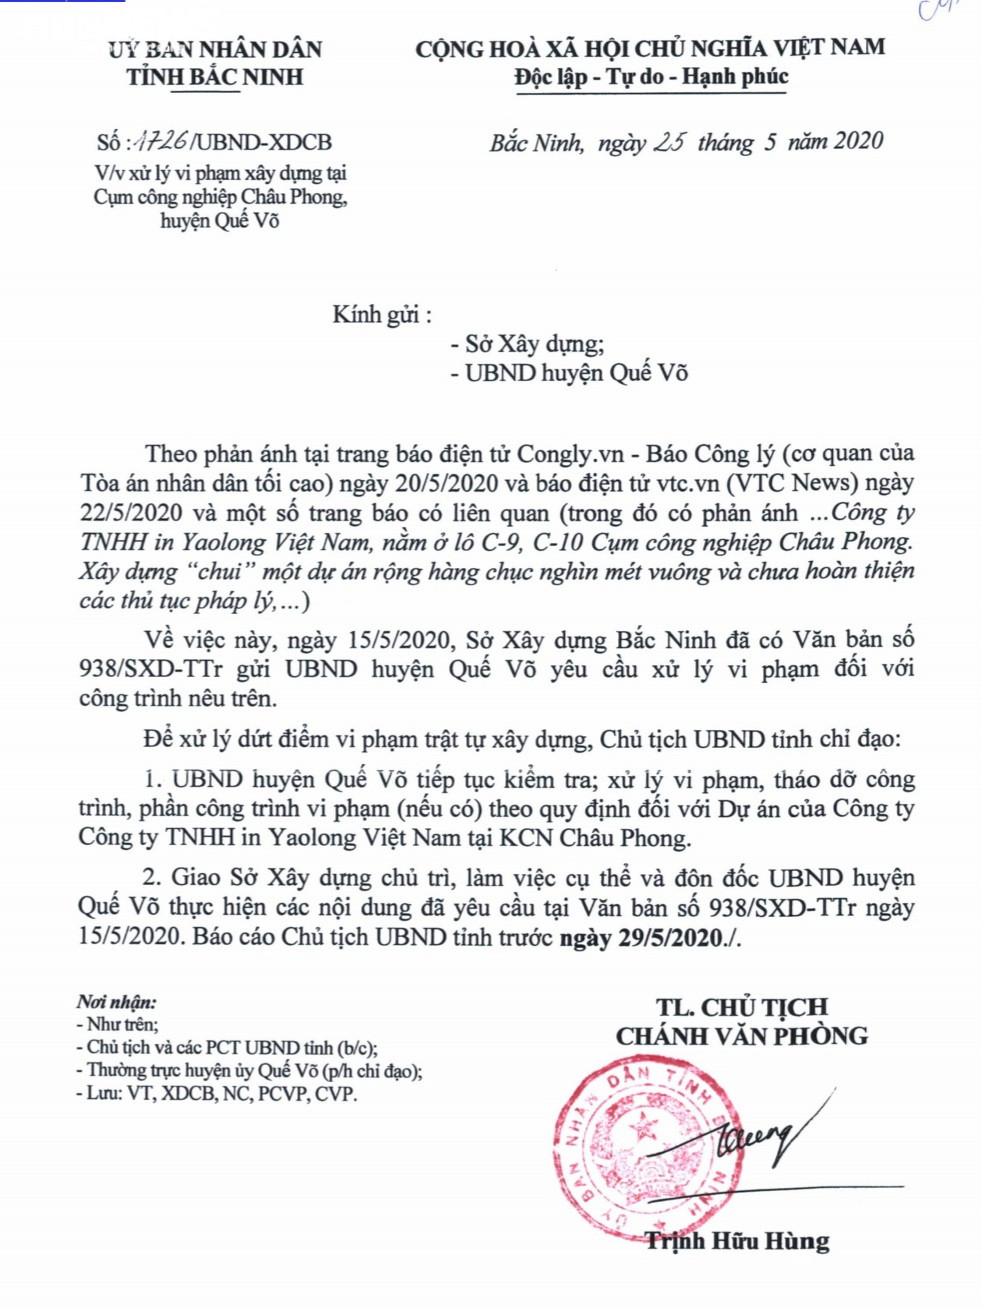 Chủ tịch Bắc Ninh chỉ đạo xử lý việc xây “chui” dự án của Công ty Yaolong